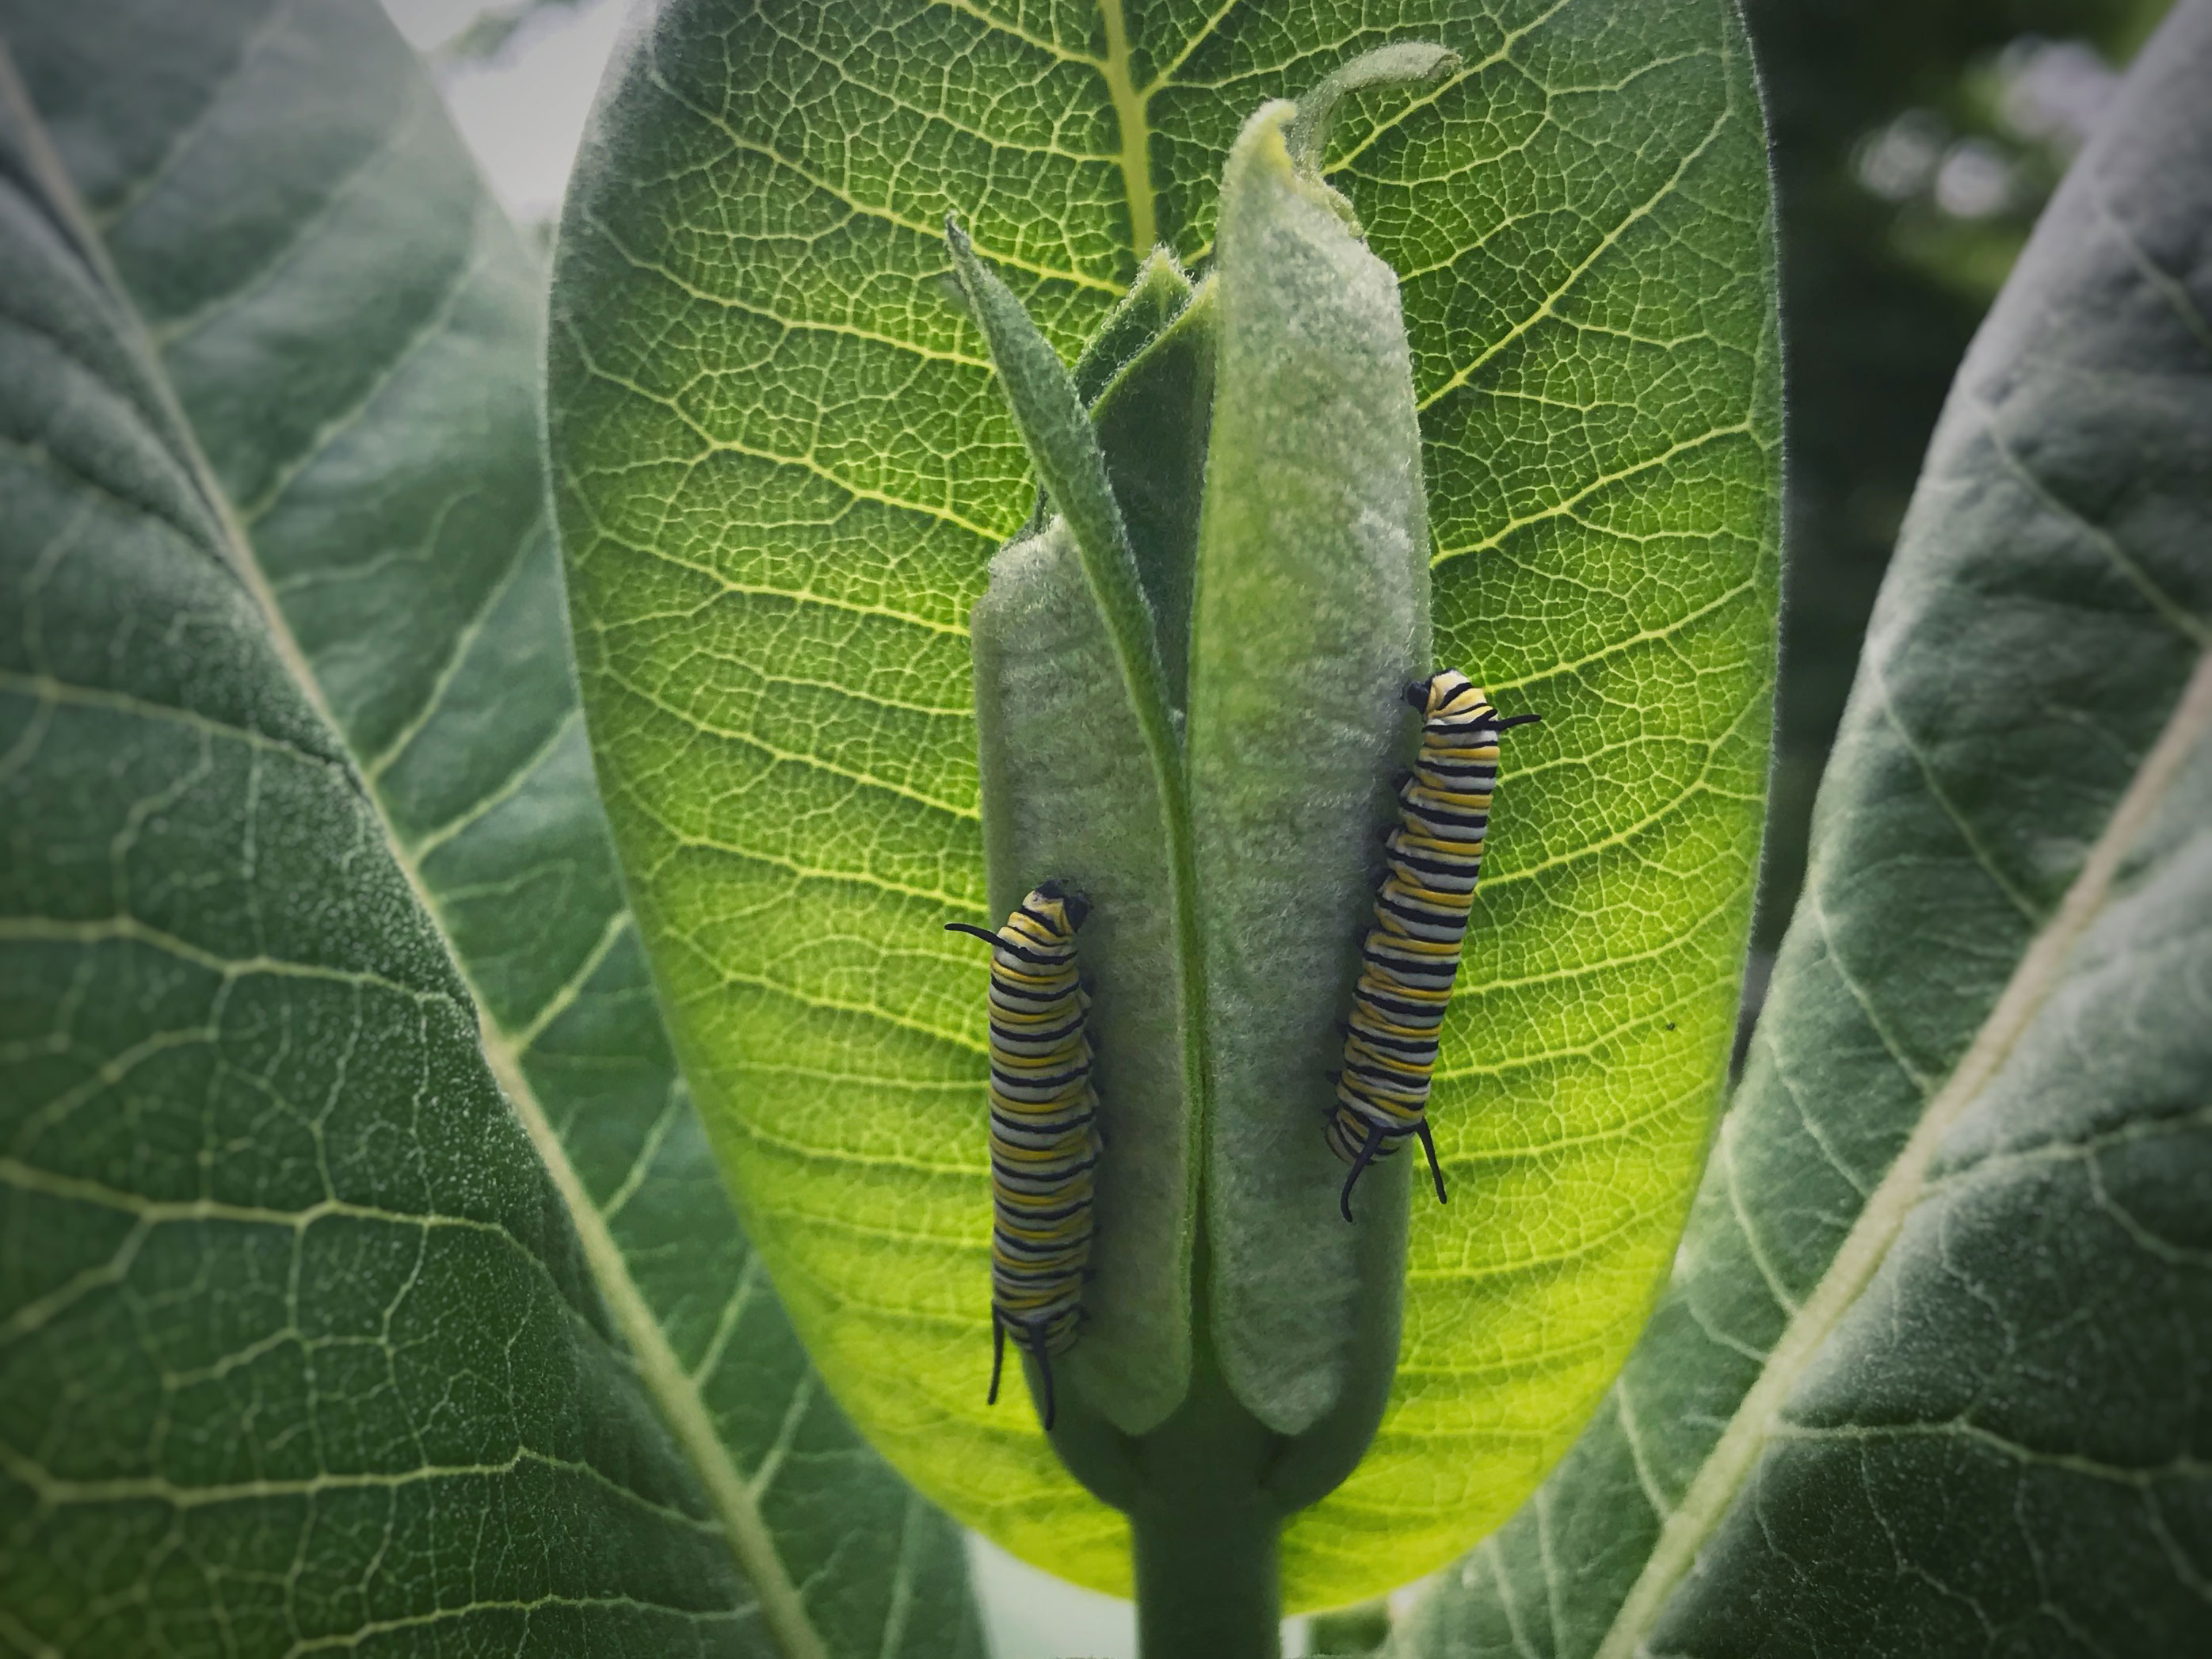 Monarch caterpillars climbing up a leaf.